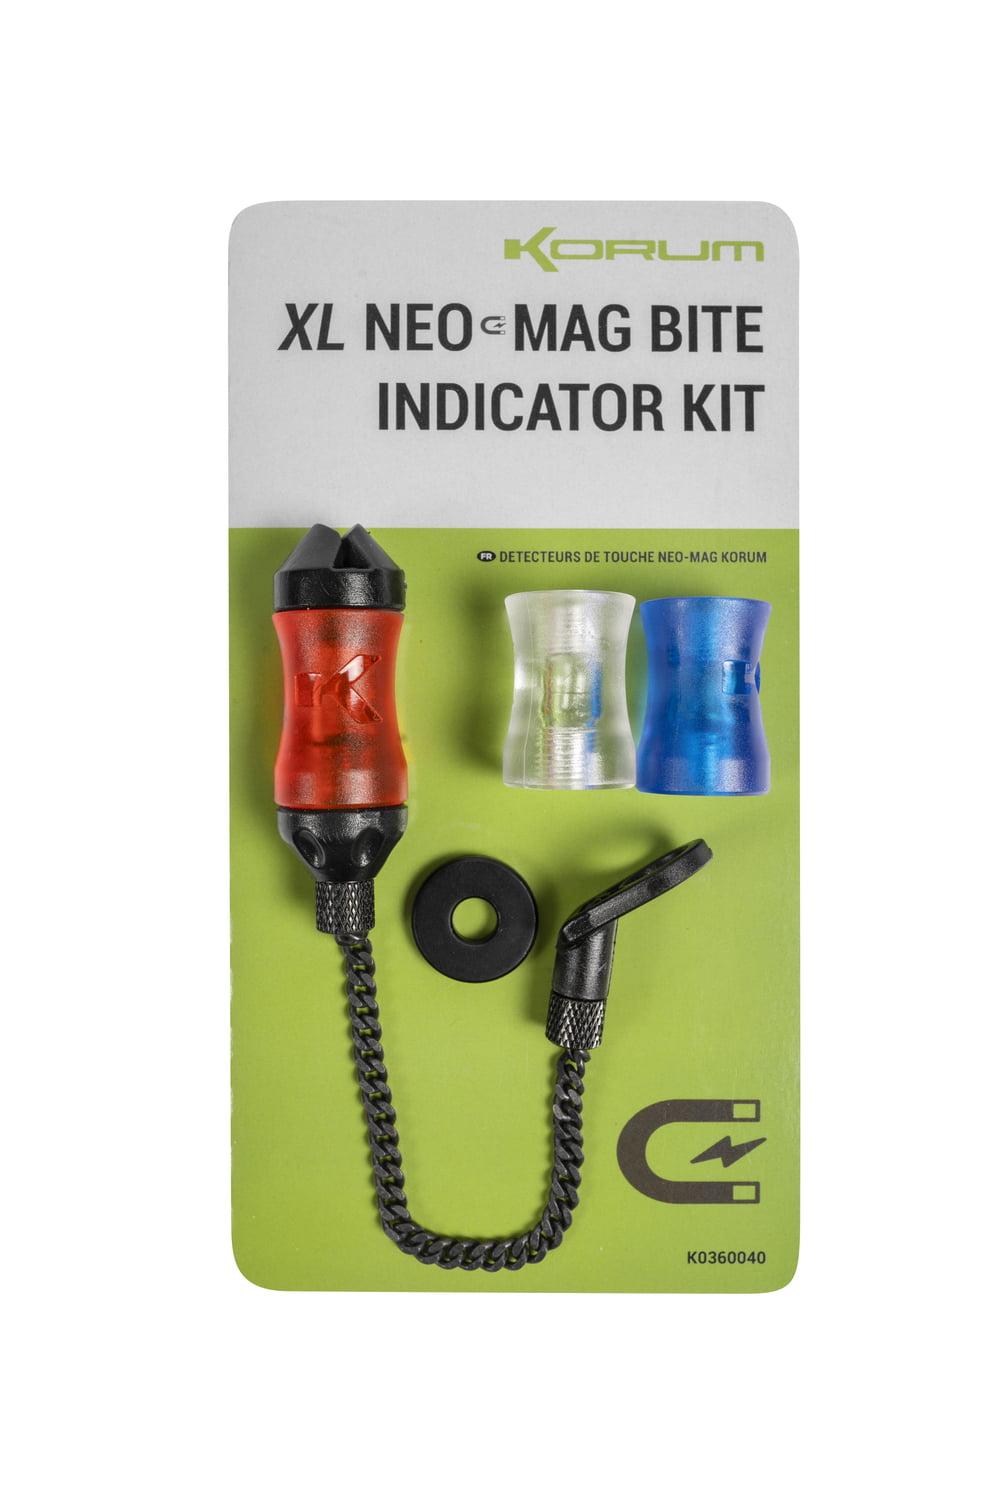 Bobbin Korum XL Neo-Mag Bite Indicator Kit